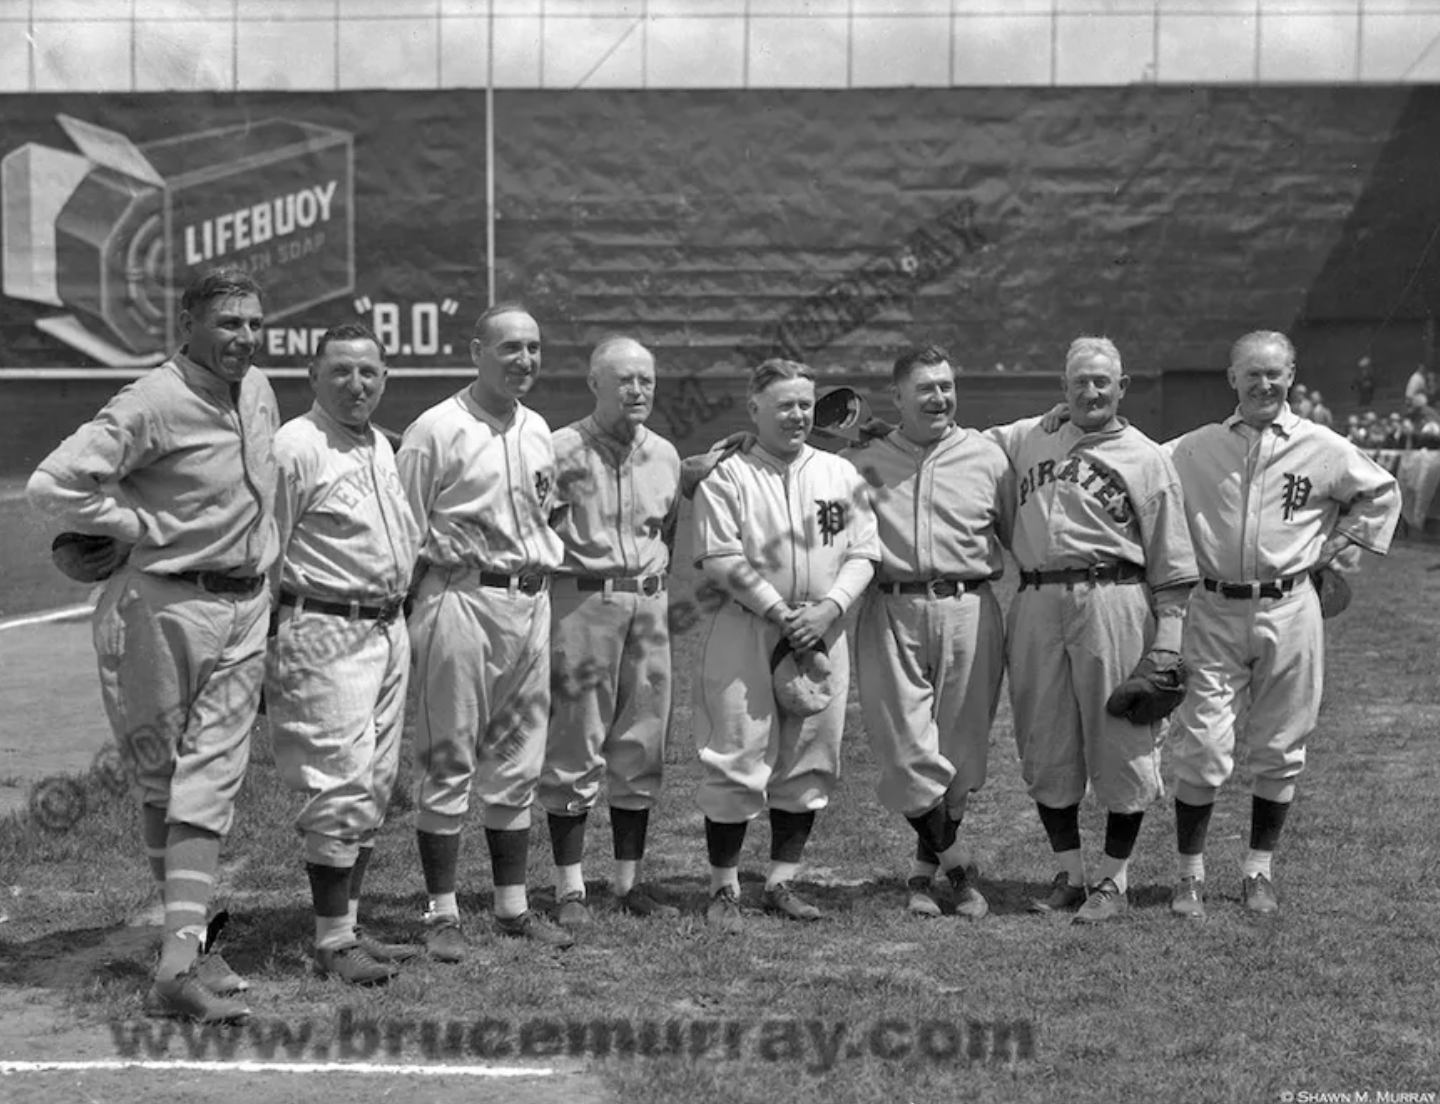 Philadelphia Phillies 50th Anniversary Game, 1933 - Framed